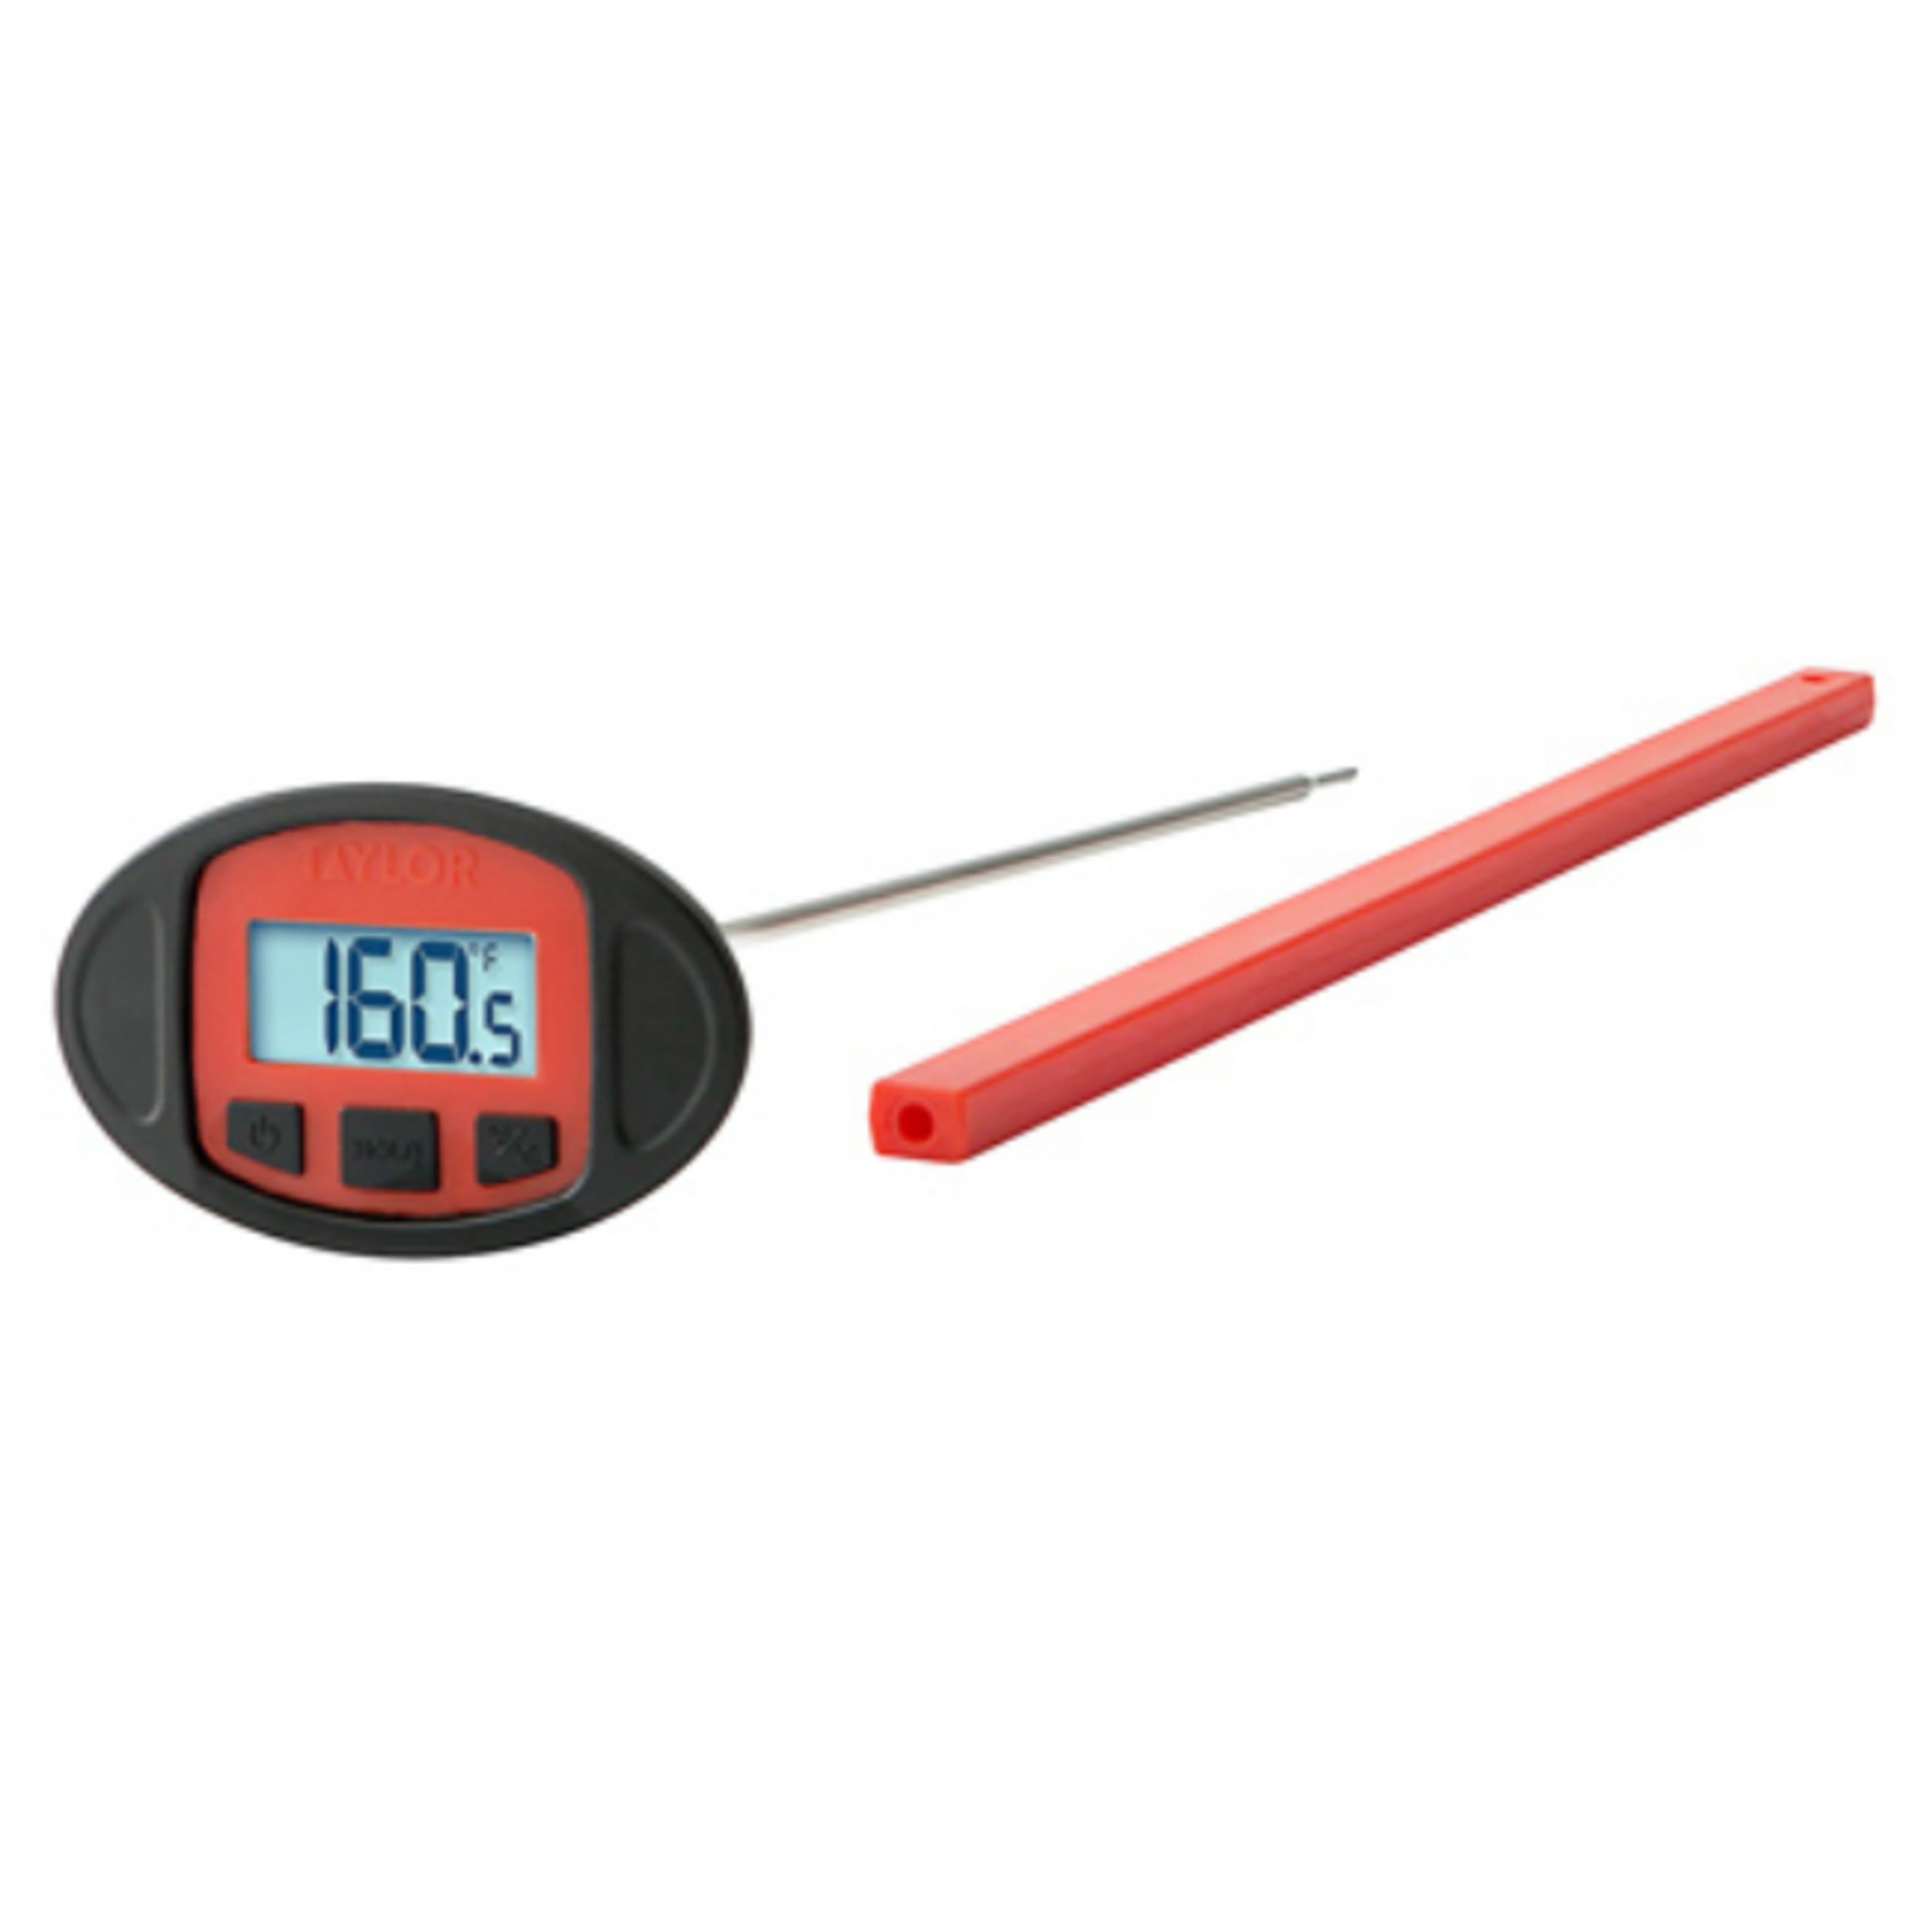 NEW General Tools DPT392FC Digital Stem Thermometer FREE2DAYSHIP TAXFREE 